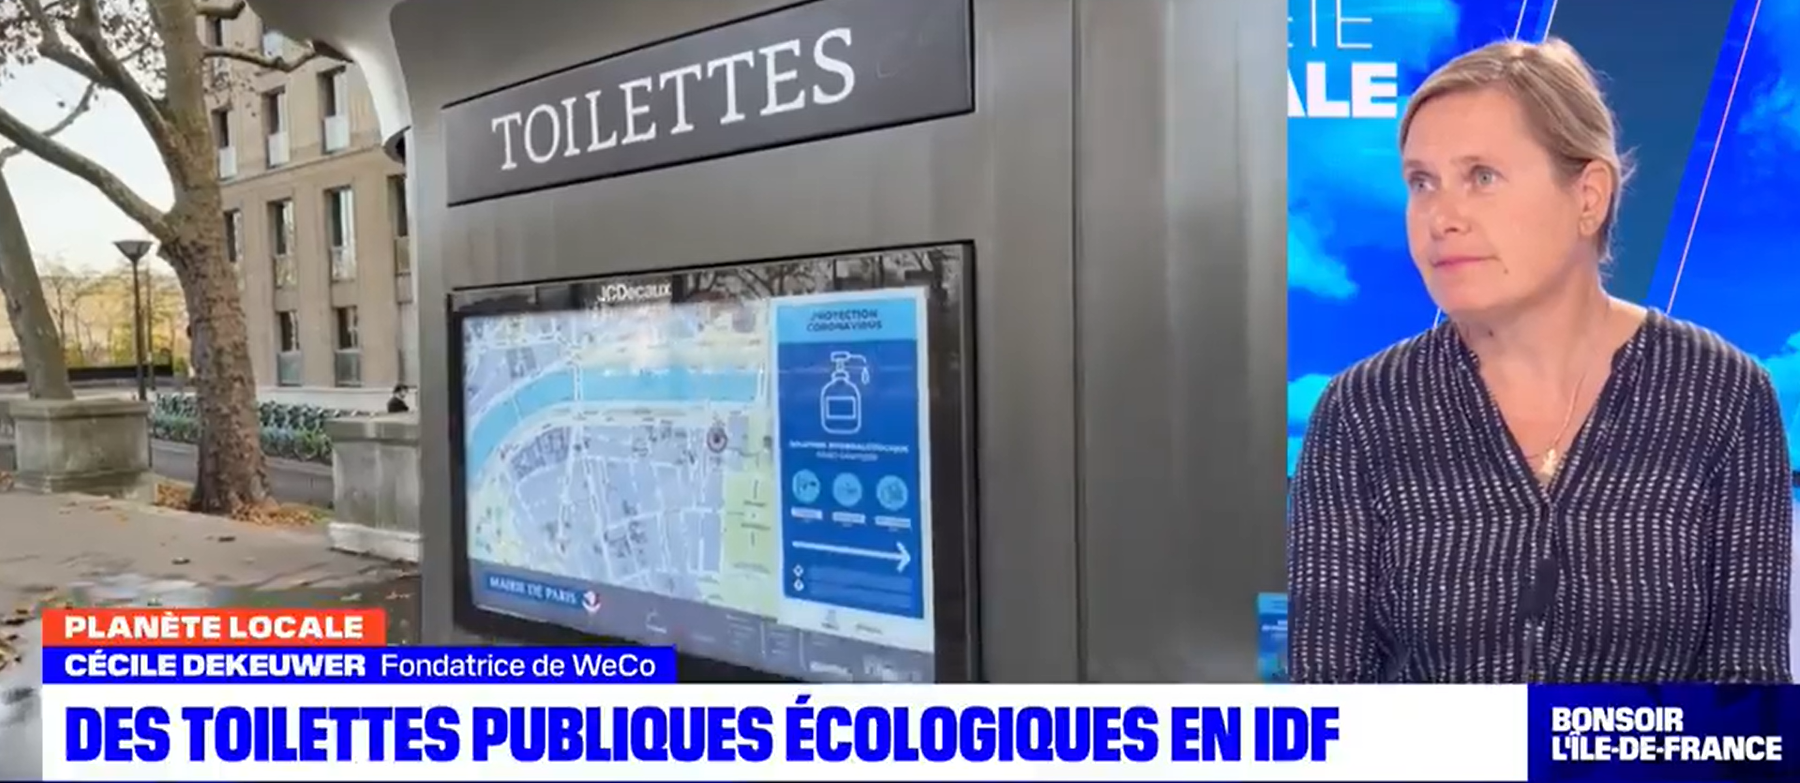 Autonomous Toilet Technology CEO interviewed by BFM TV Paris Ile de France